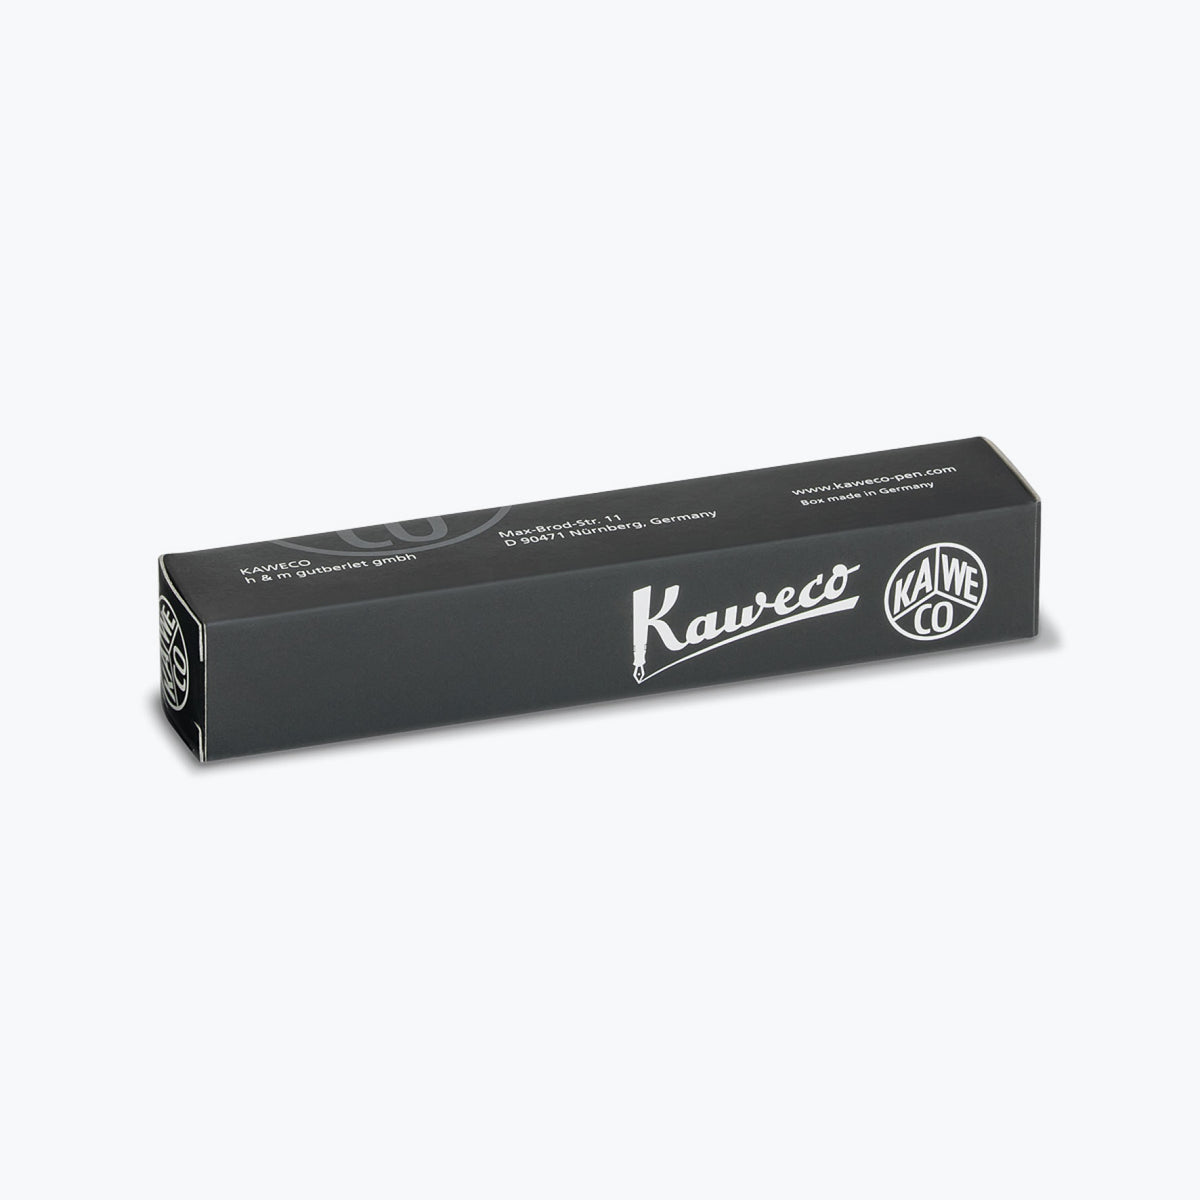 Kaweco - Rollerball Pen - Skyline Sport - Mint